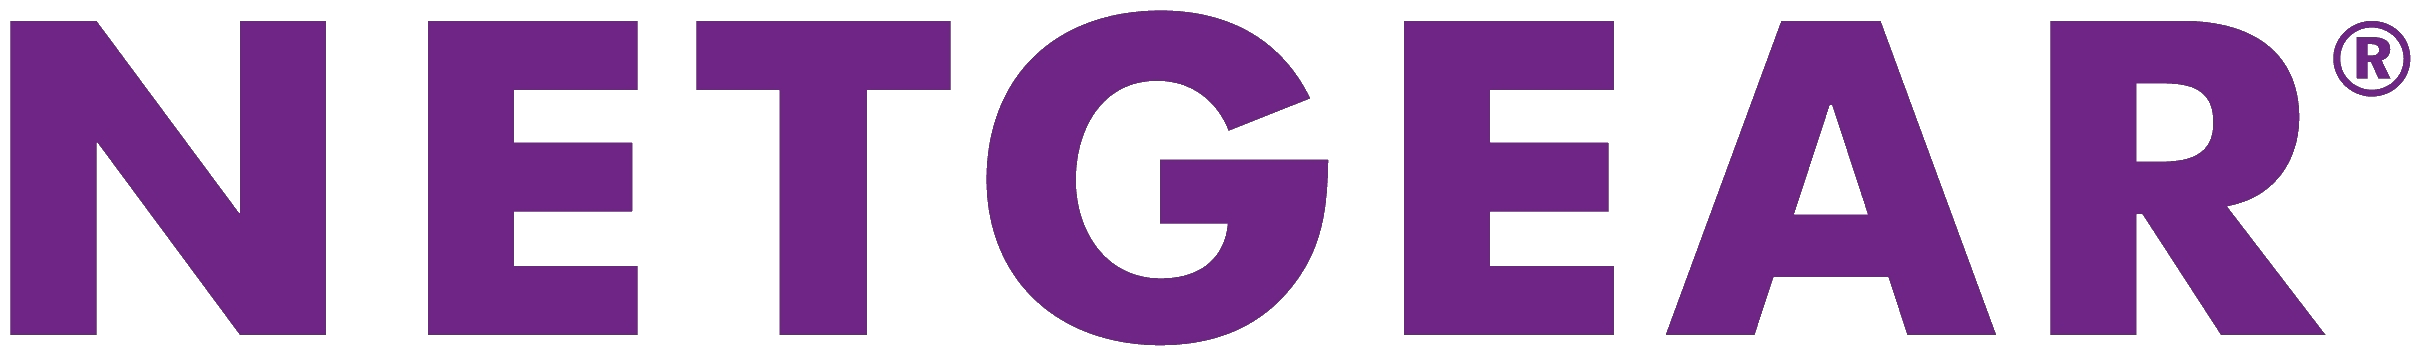 NETGEAR_Logo